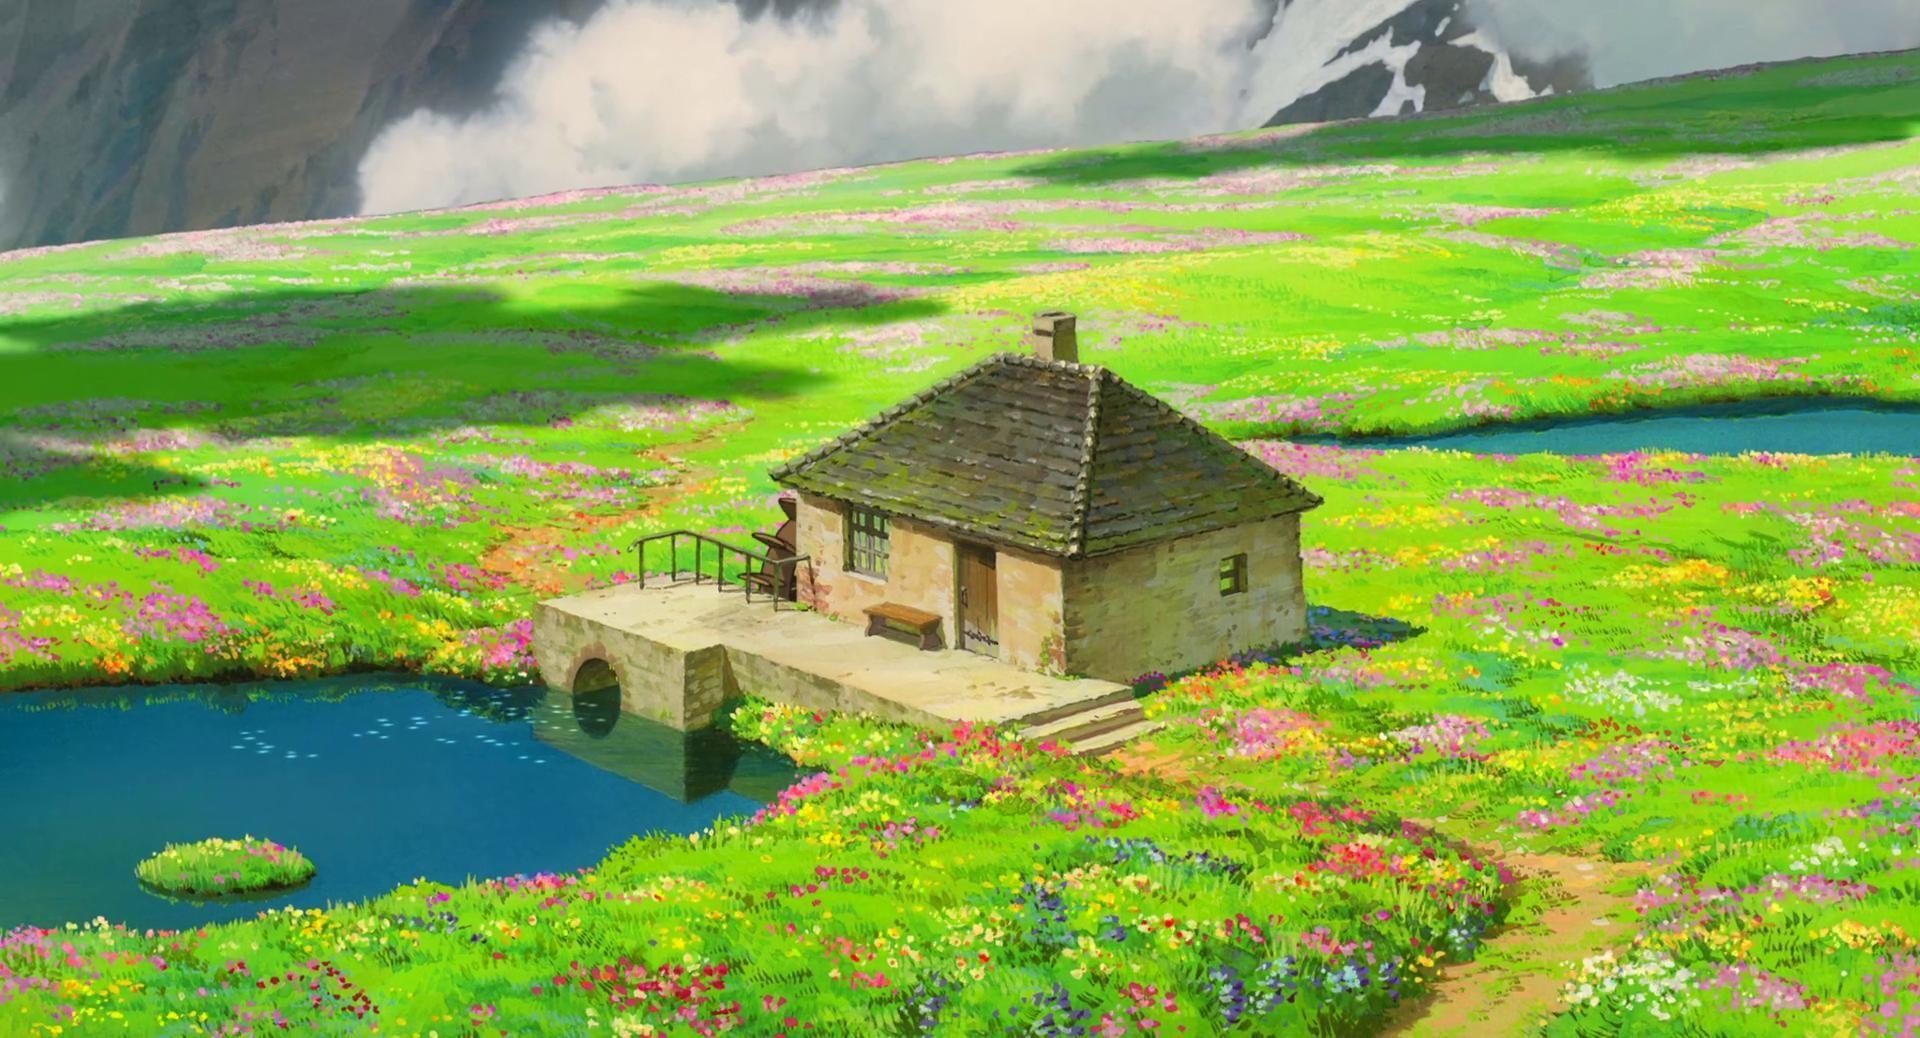 Studio Ghibli Scenery Wallpapers - Top Những Hình Ảnh Đẹp